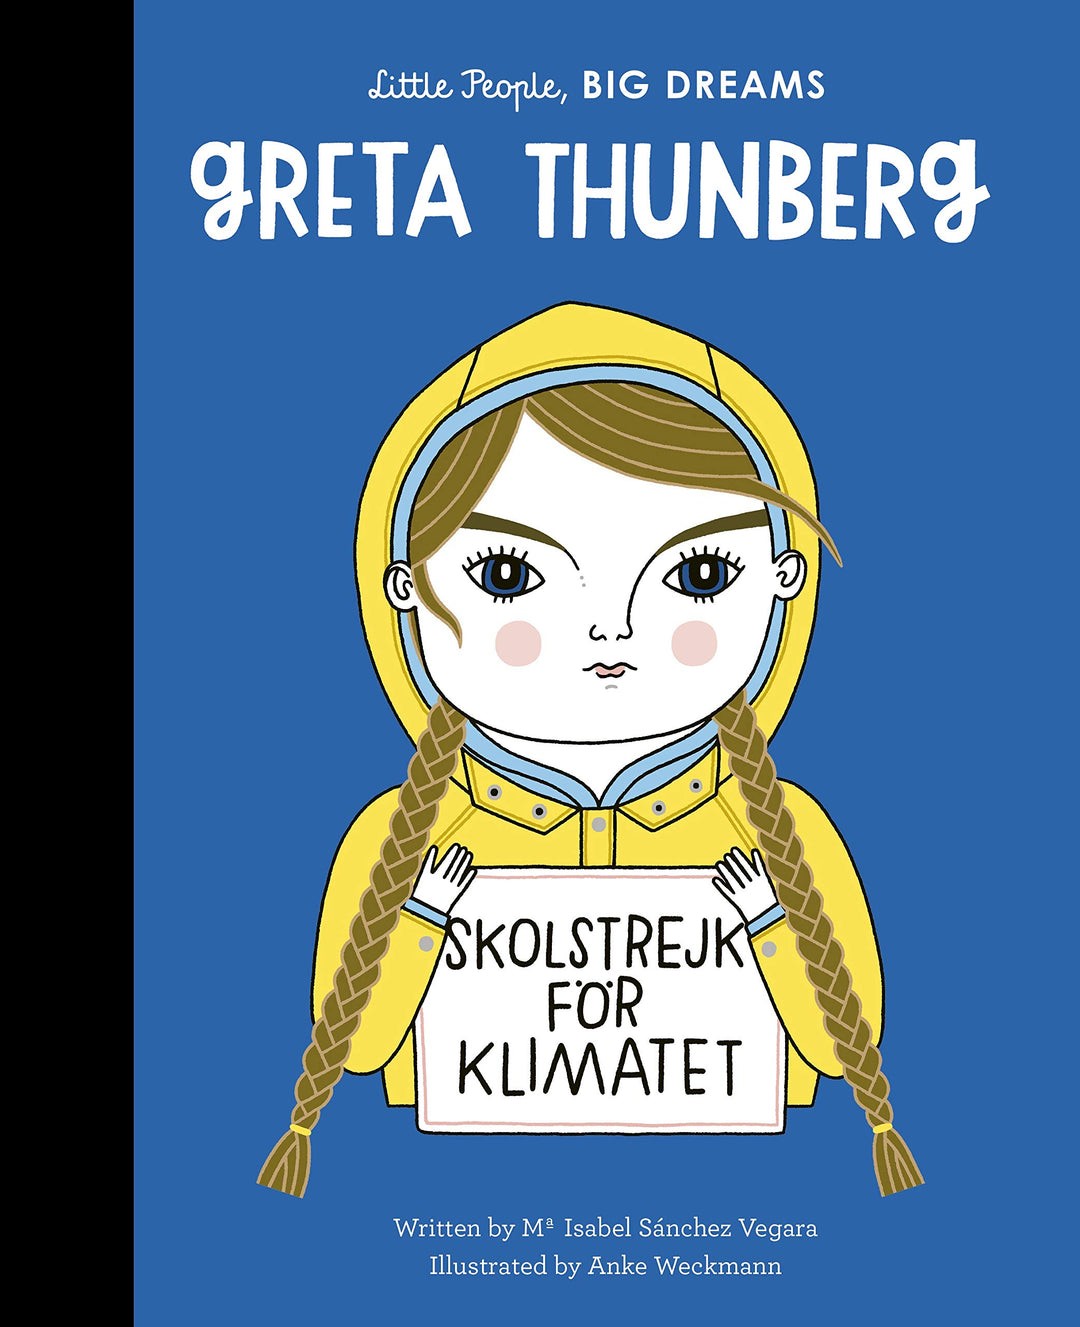 Little People, BIG DREAMS Books - Greta Thunberg